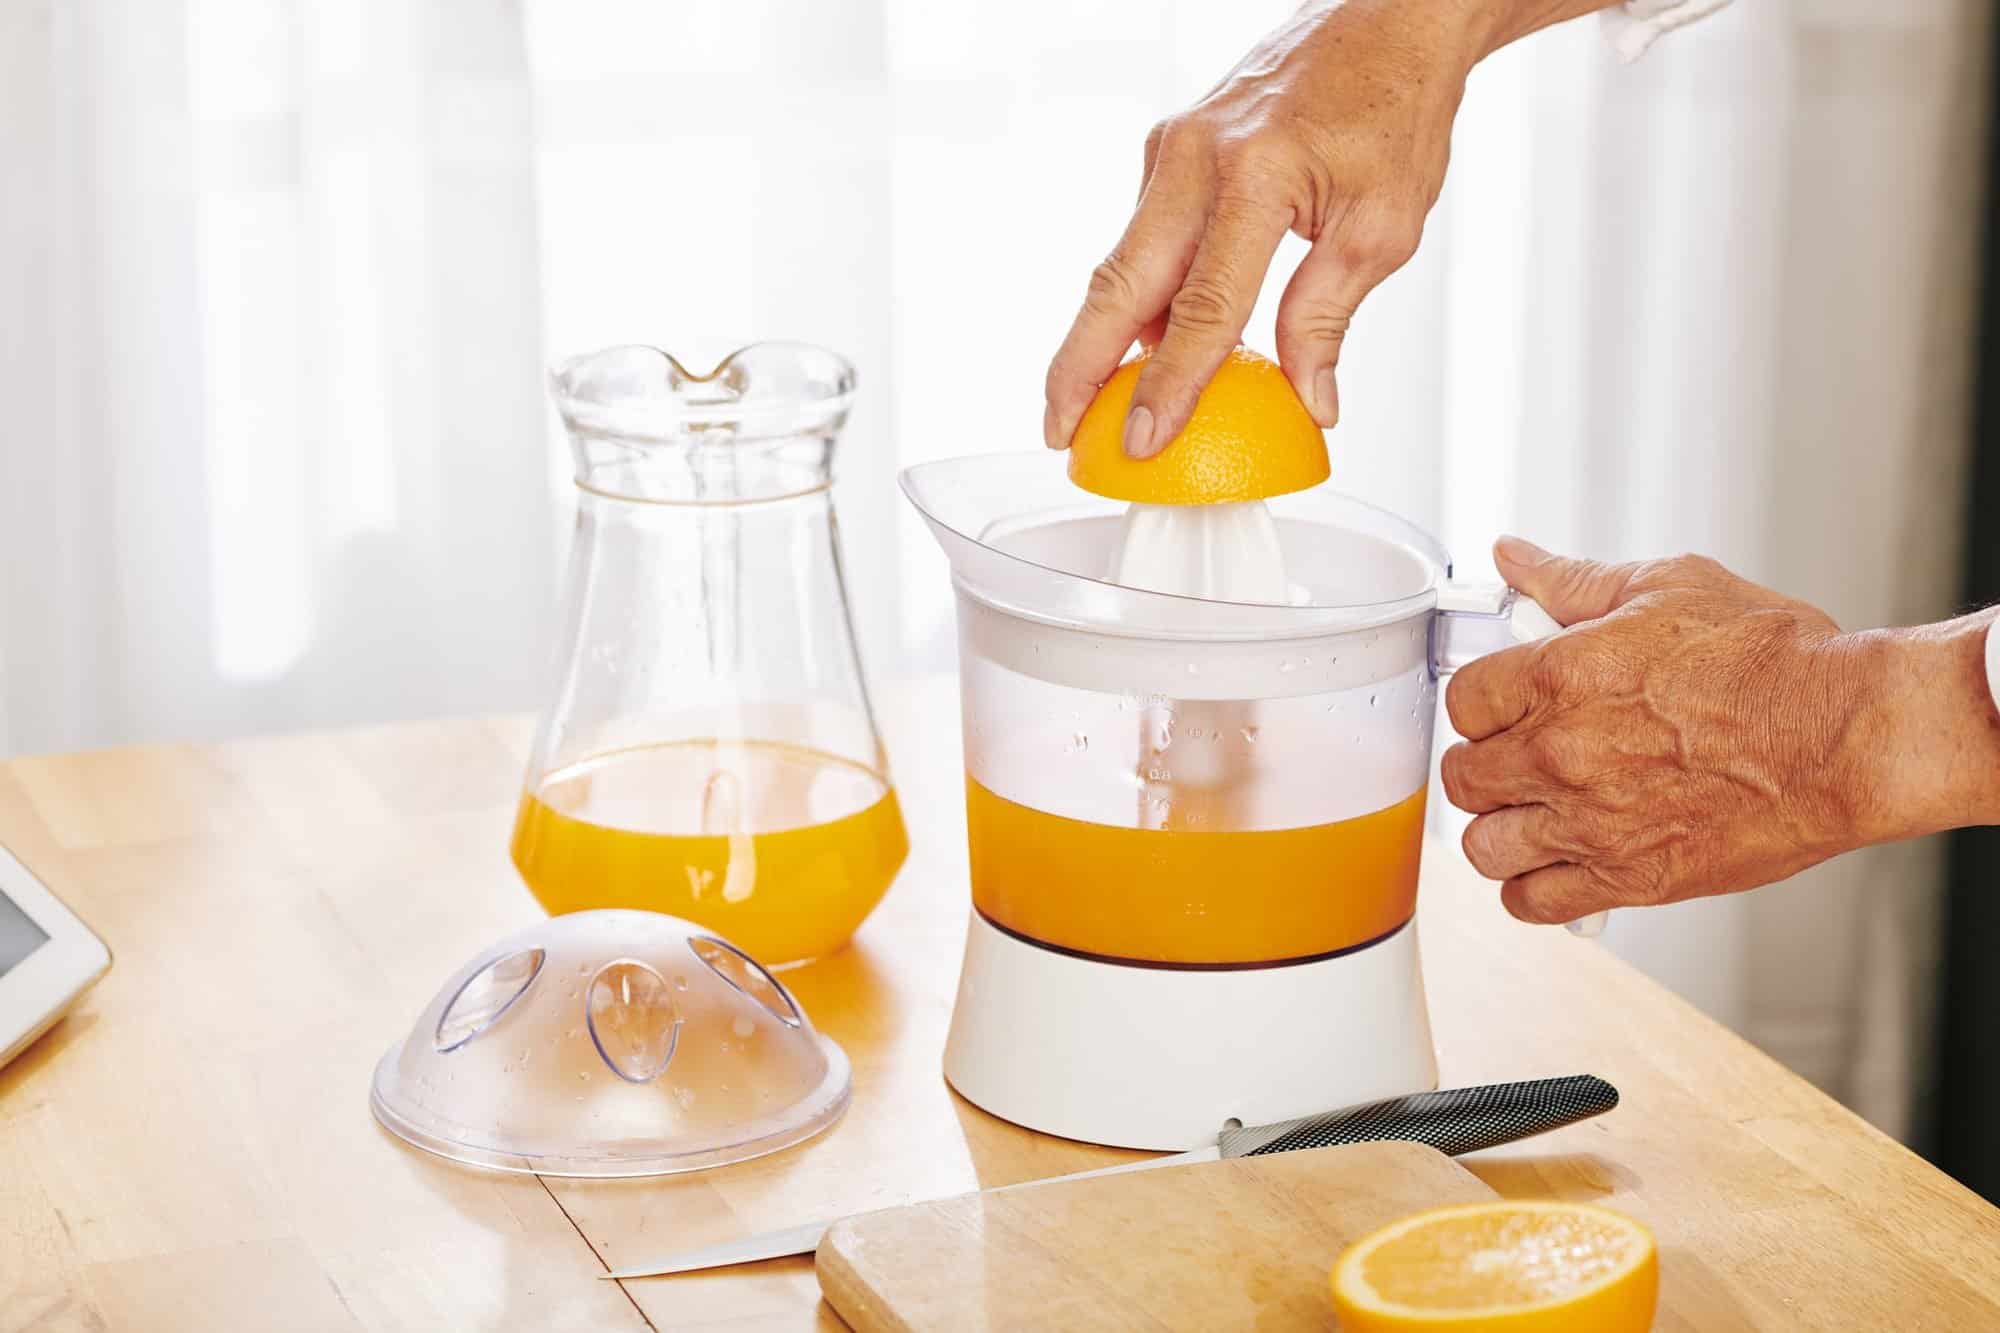 Manual Citrus Juicer, Glass Juice Press